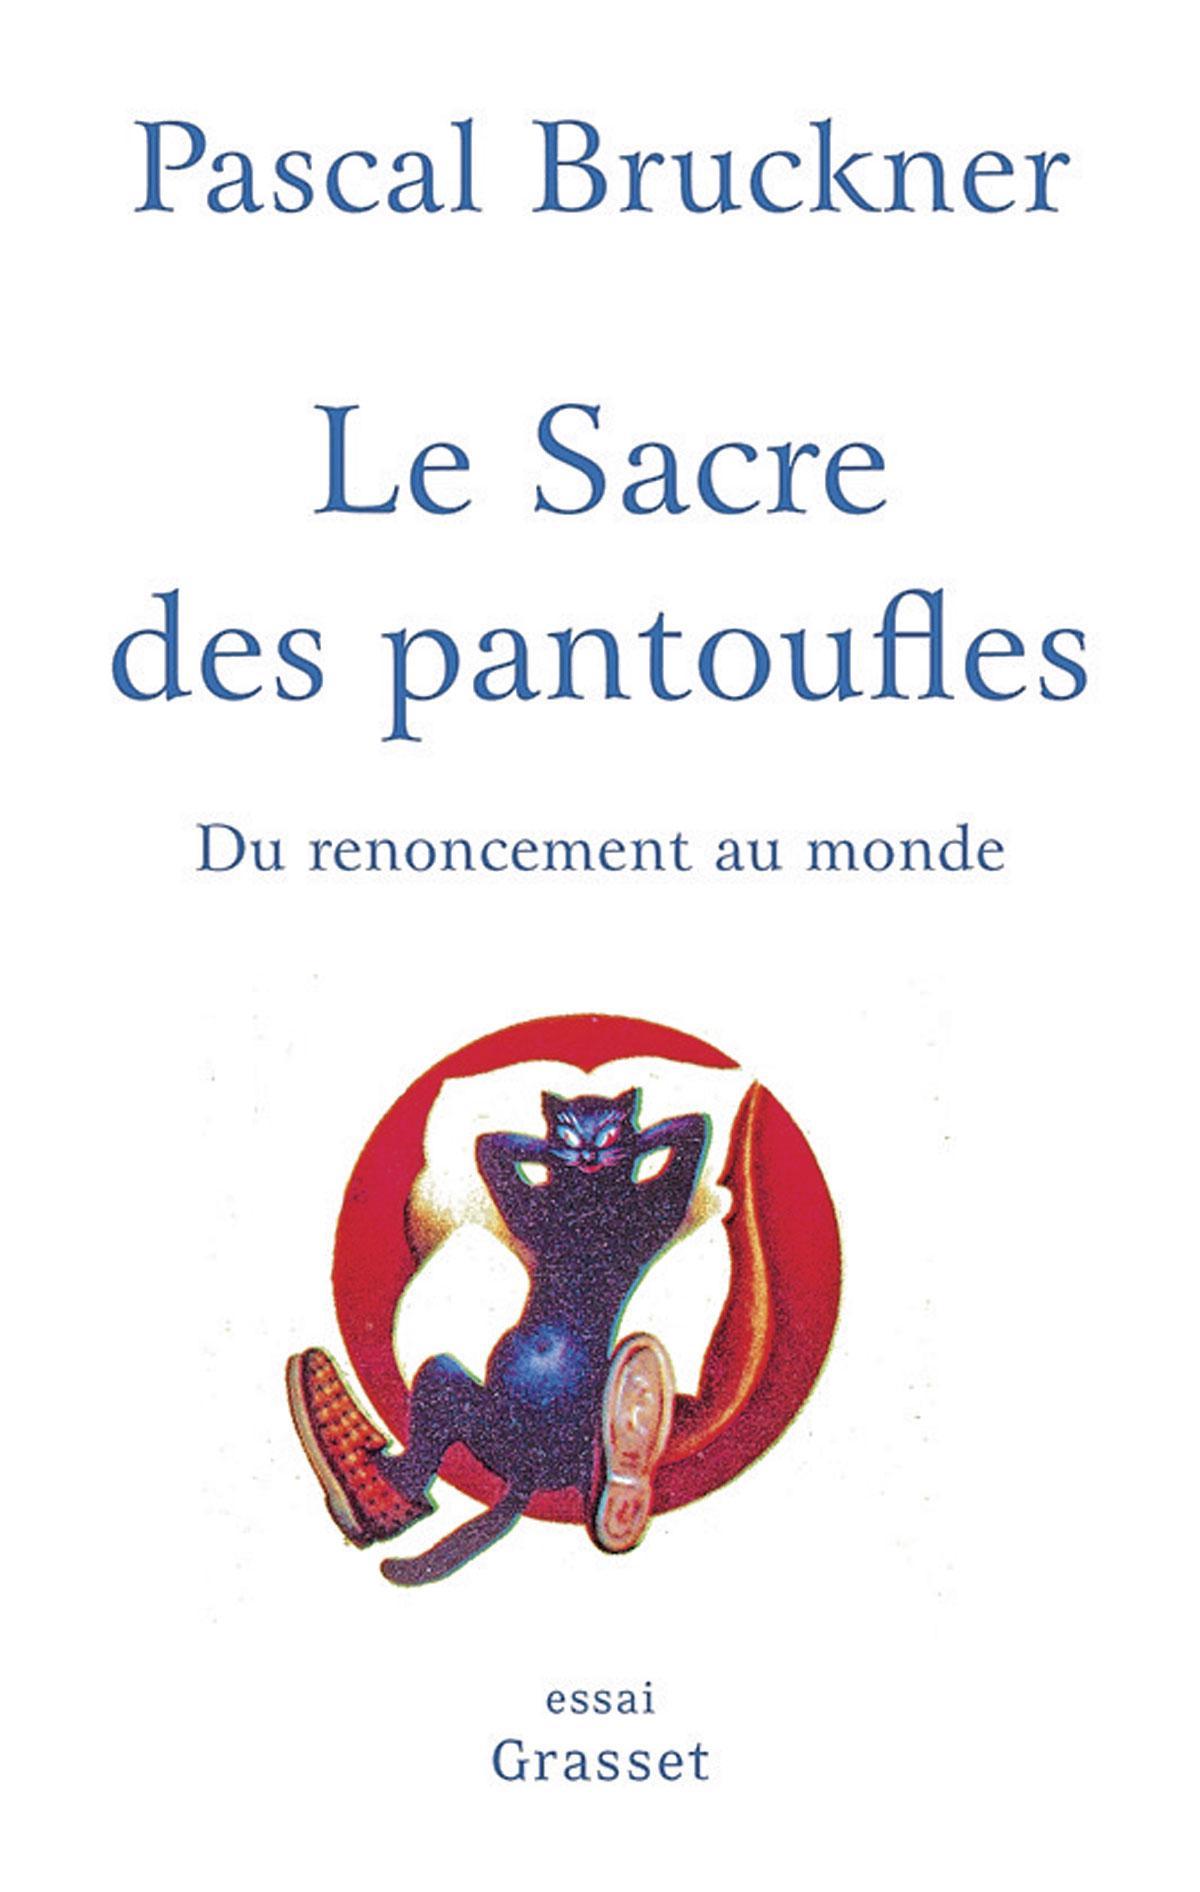 (1) Le Sacre des pantoufles. Du renoncement au monde, par Pascal Bruckner, Grasset, 162 p.